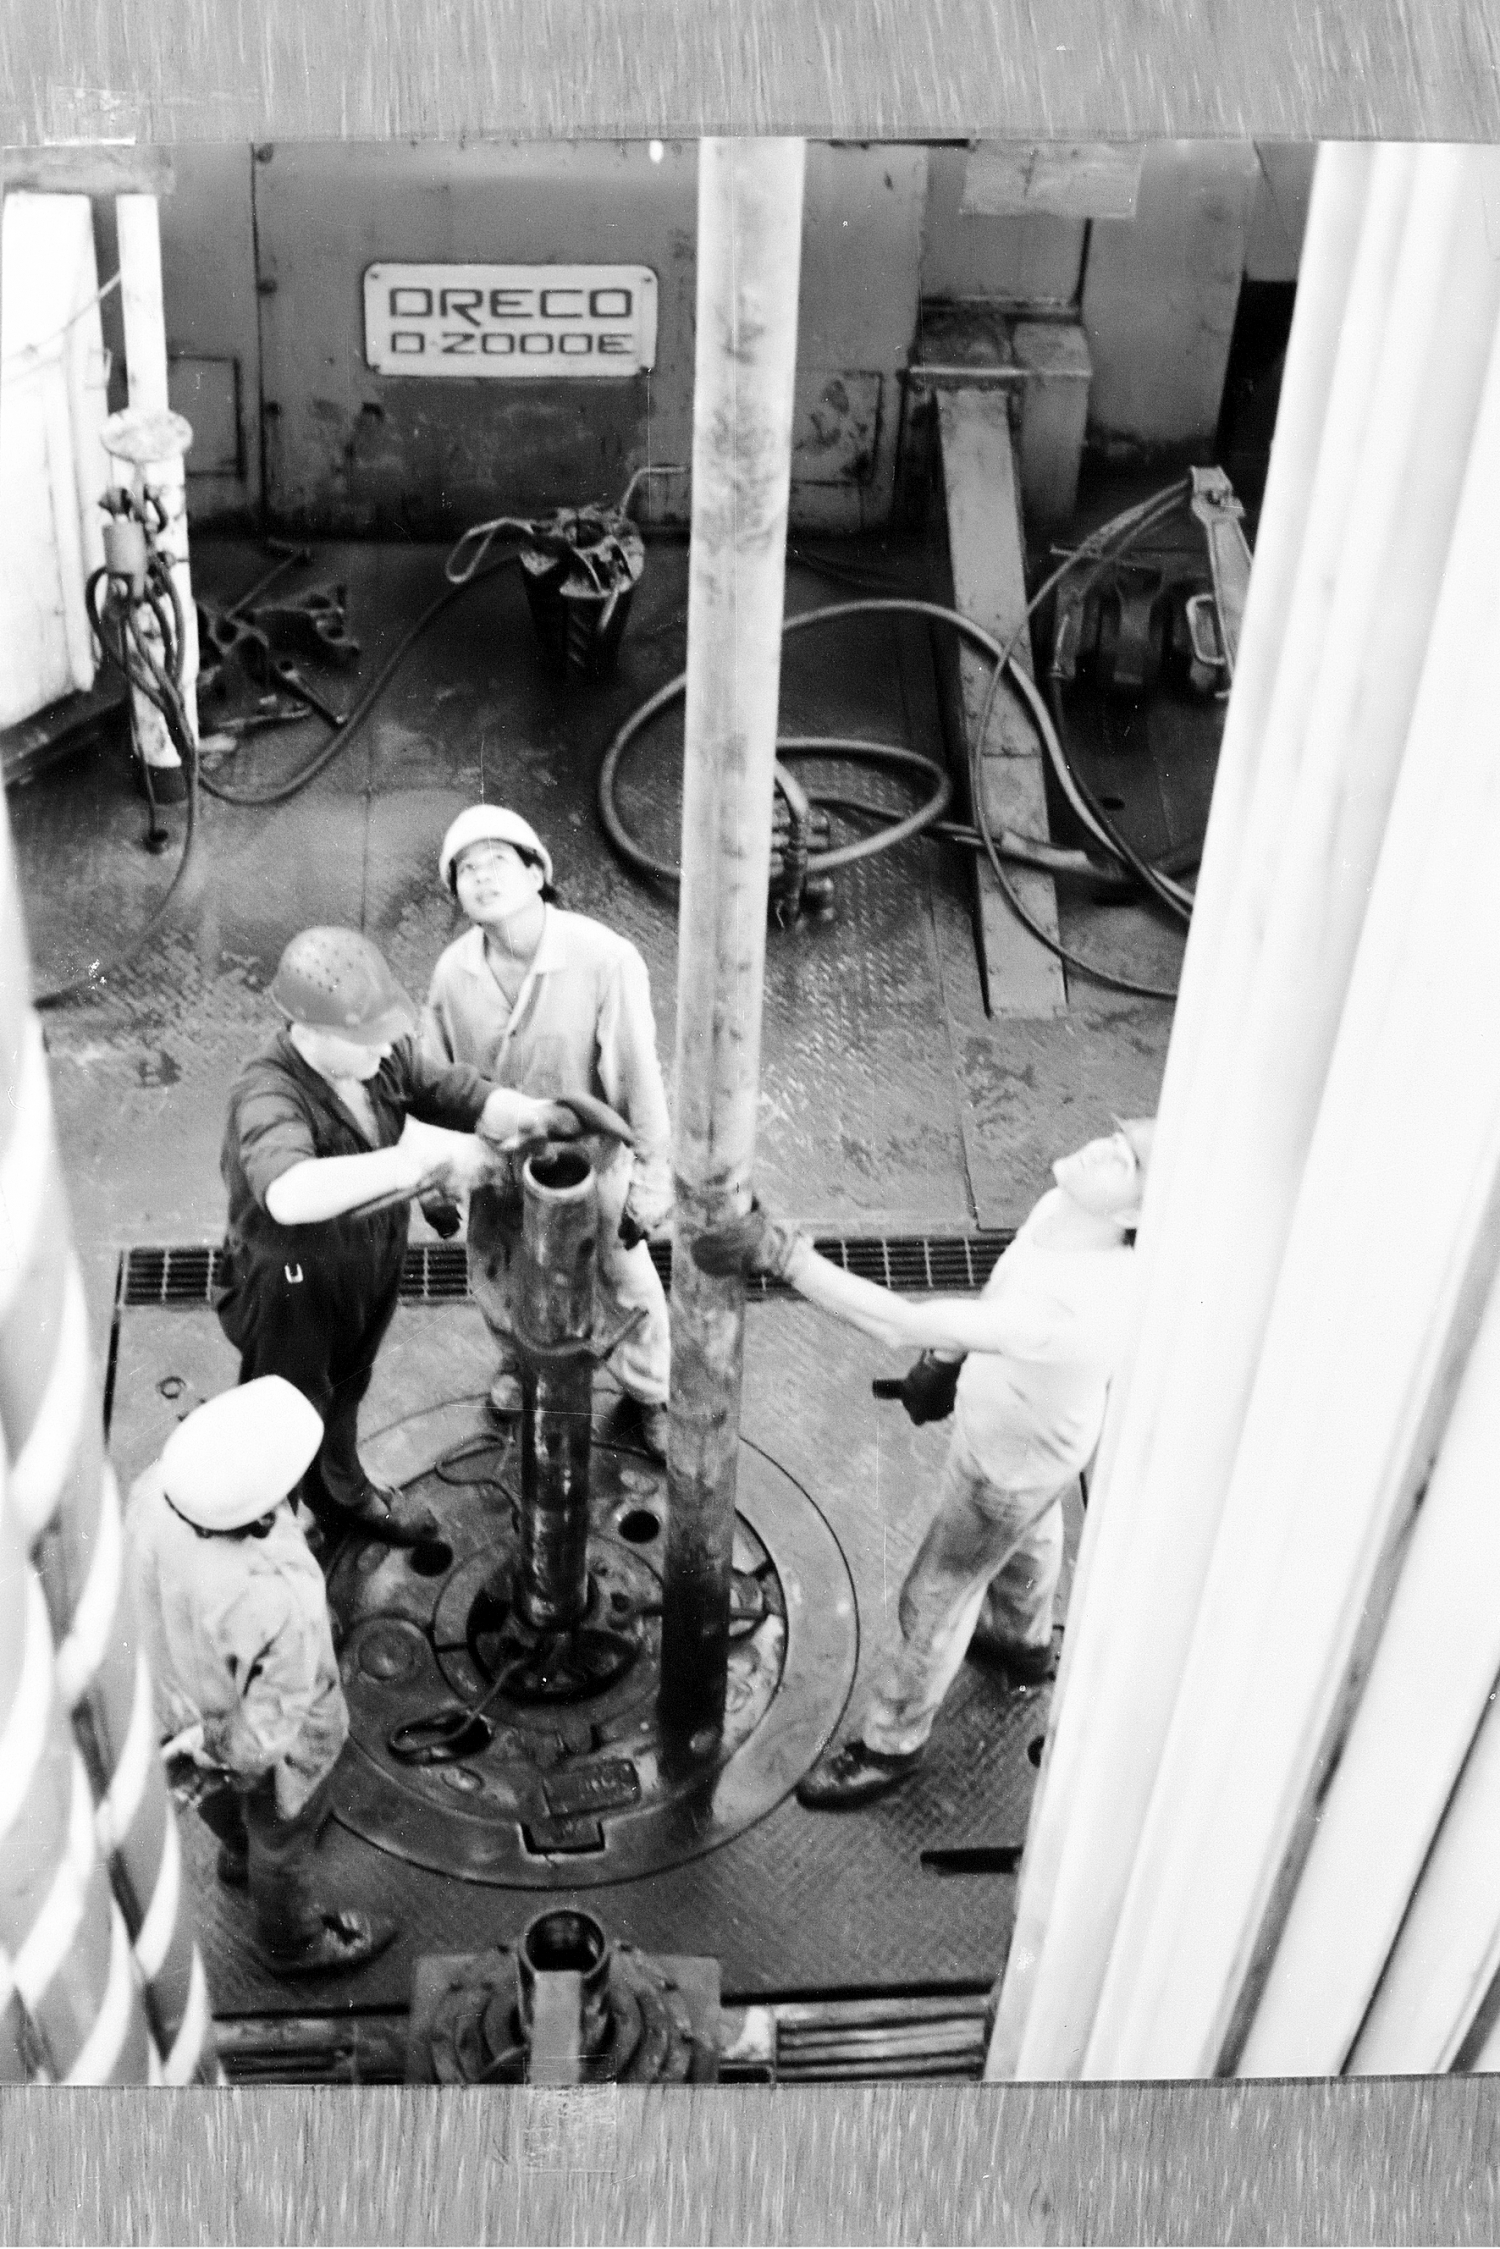 Ngày 6/9/1988 bắt đầu khai thác dầu từ tầng móng mỏ Bạch Hổ, đưa sản lượng những năm sau tăng vọt